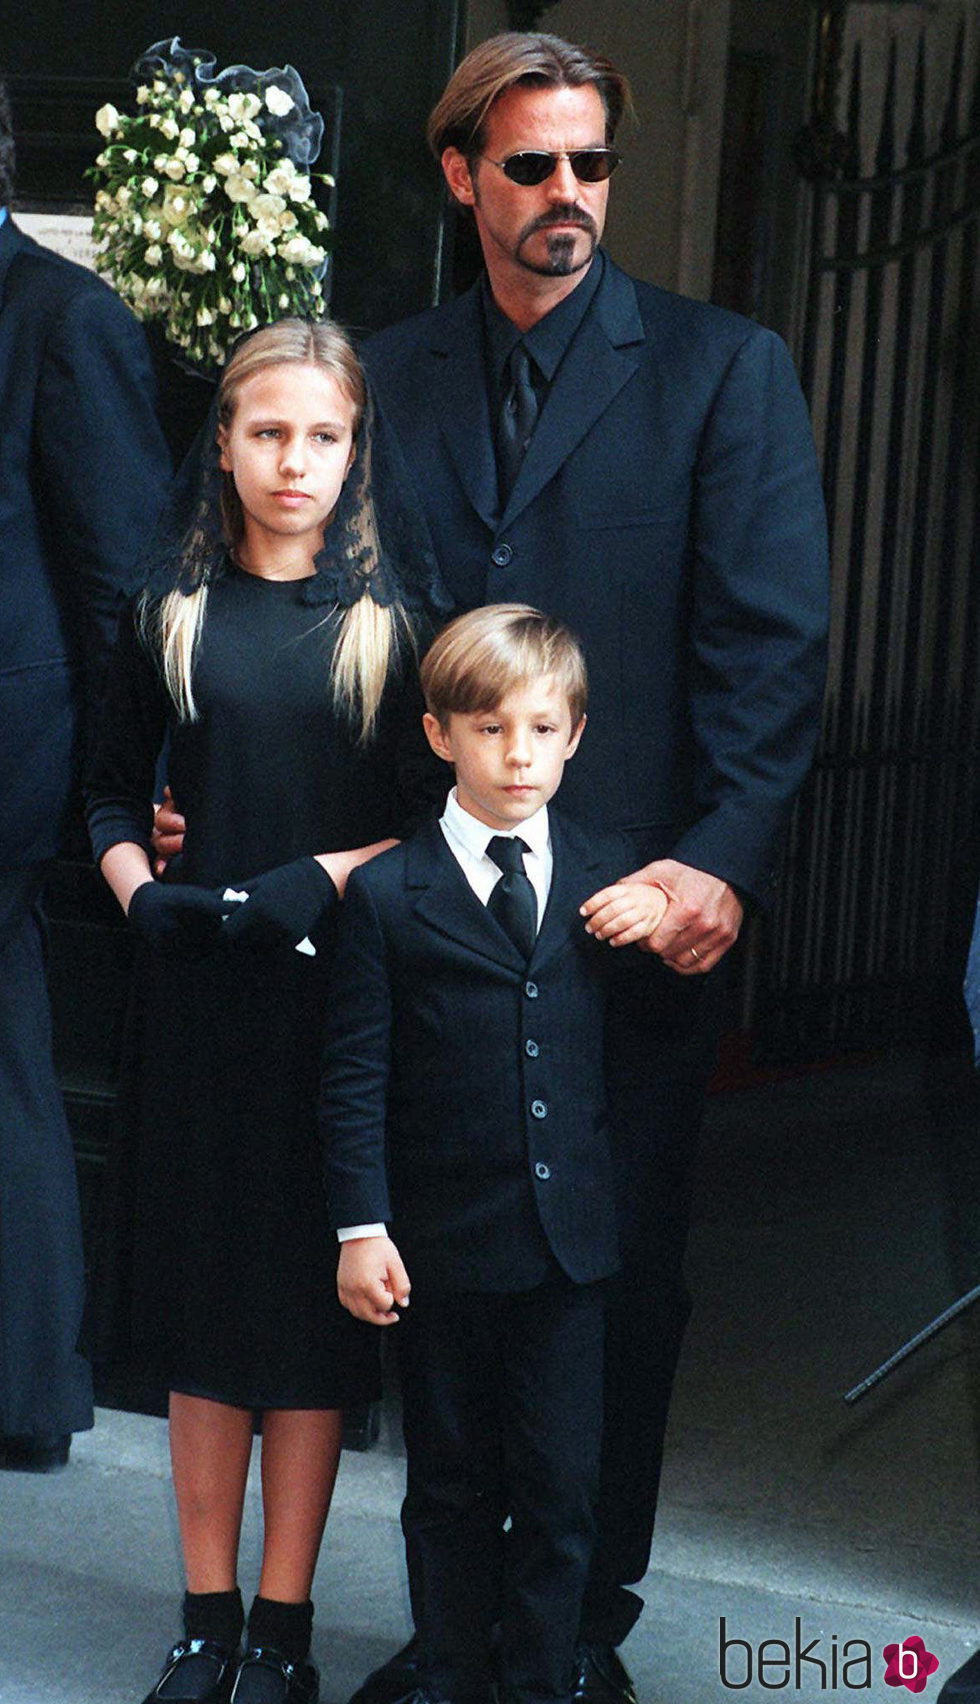 Paul Beck con sus hijos Allegra y Daniel en el entierro de Gianni Versace